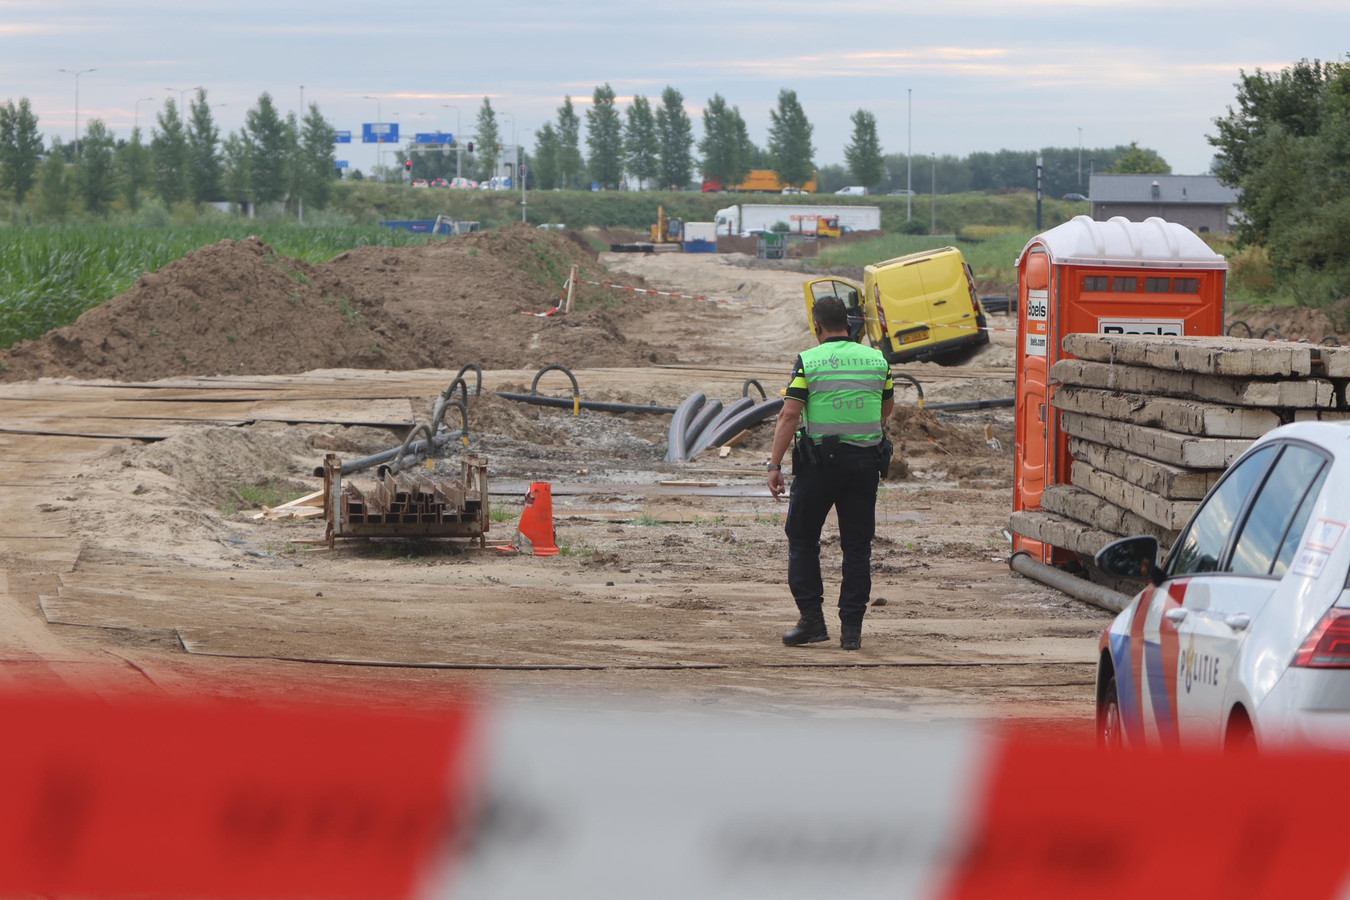 De steekpartij vond plaats op een bouwterrein, waar wordt gewerkt aan de stroomvoorziening onder de A2.